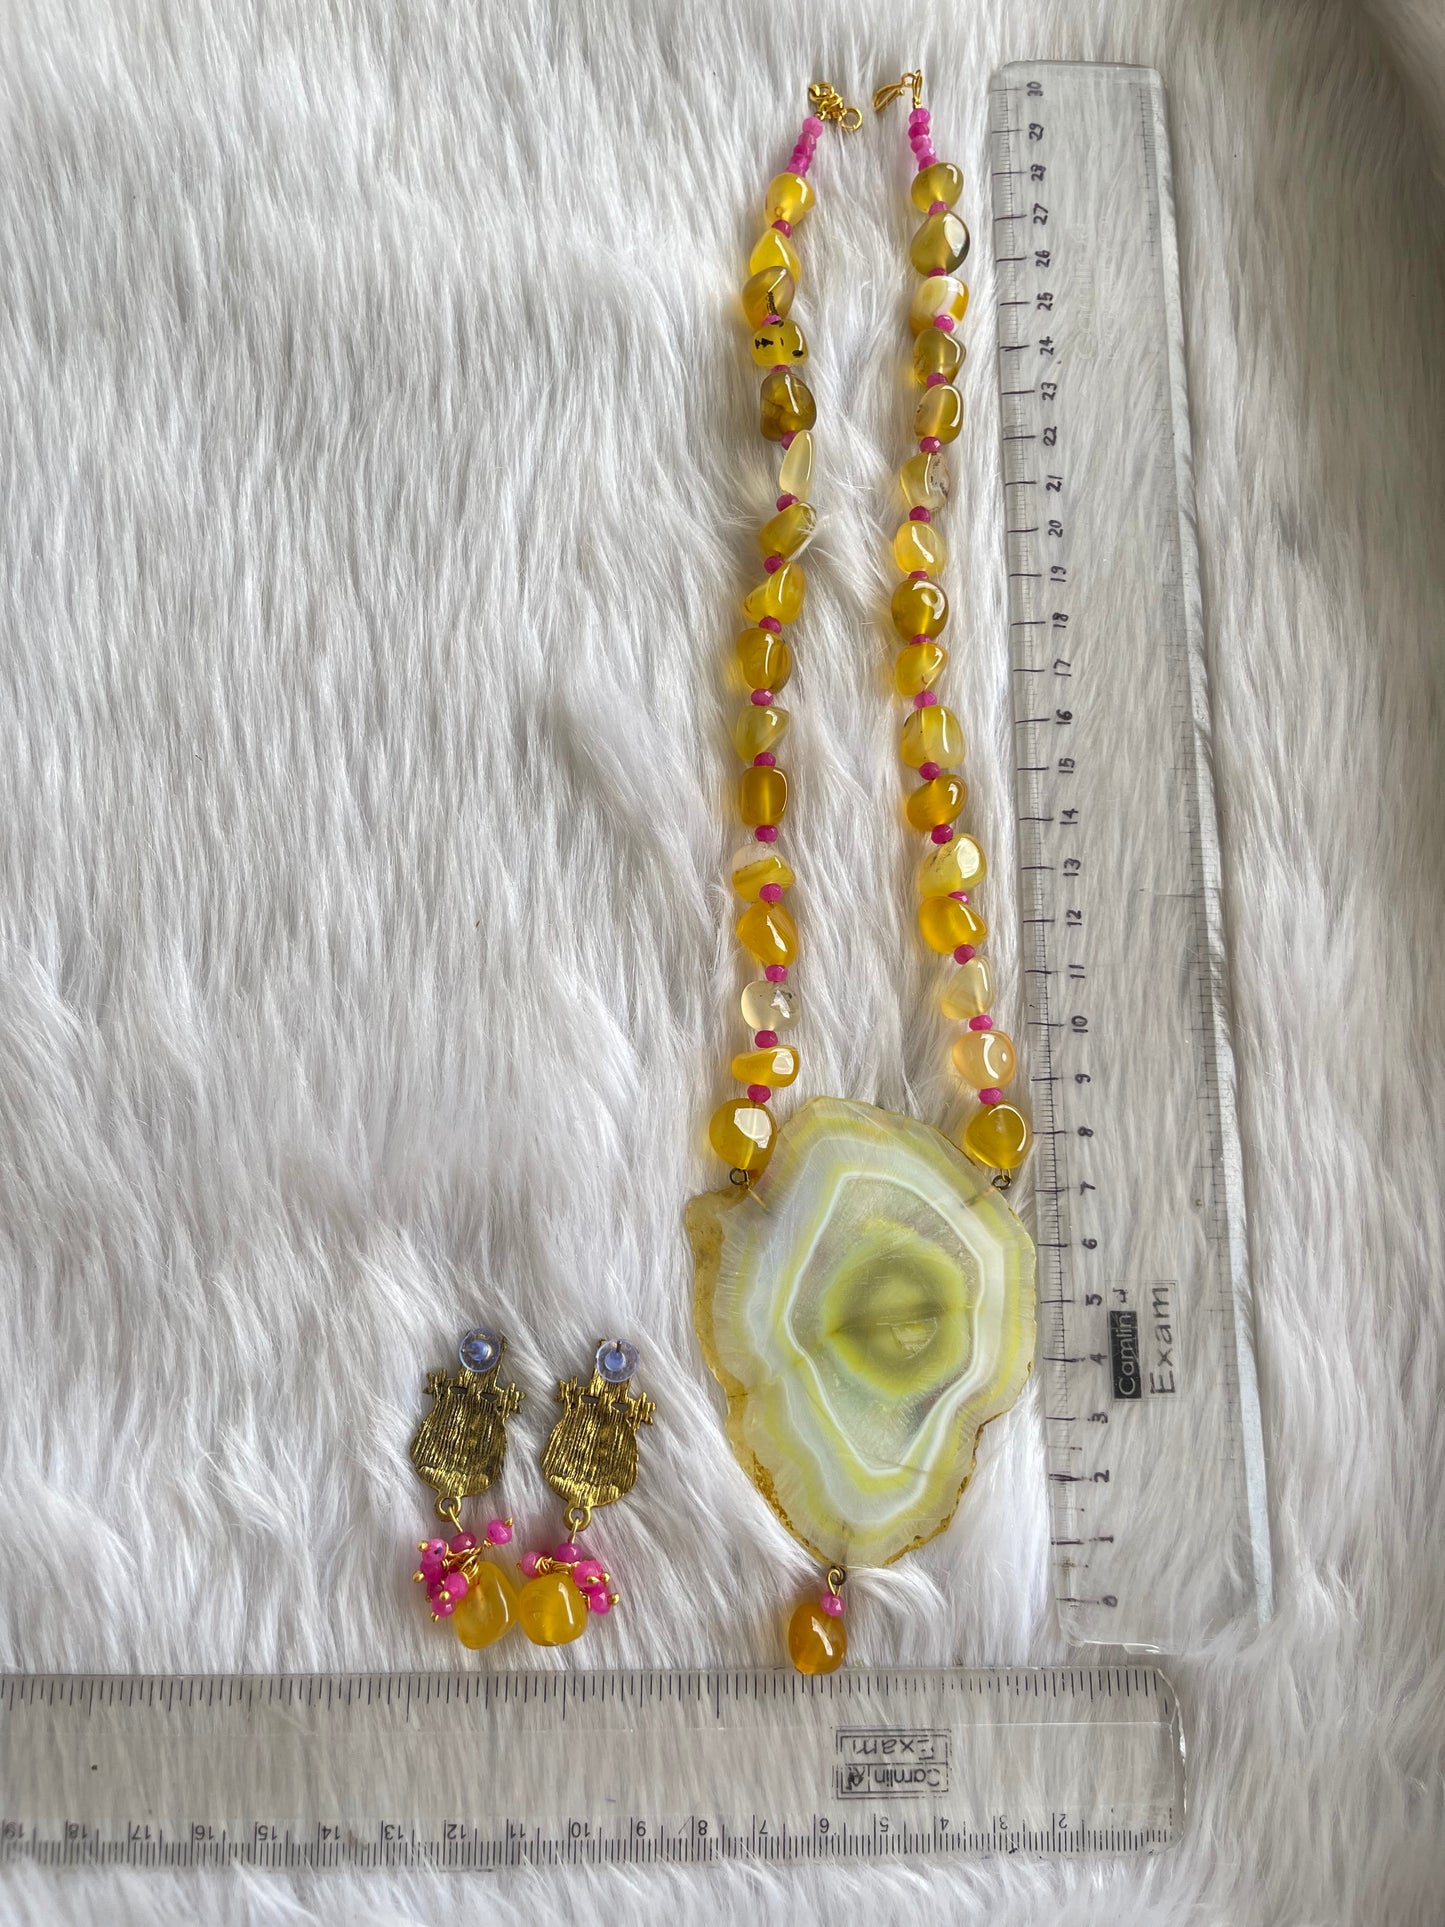 Antique Yellow Onyx beaded Ma Saraswathi Hand painted agate pendant necklace set dj-42546